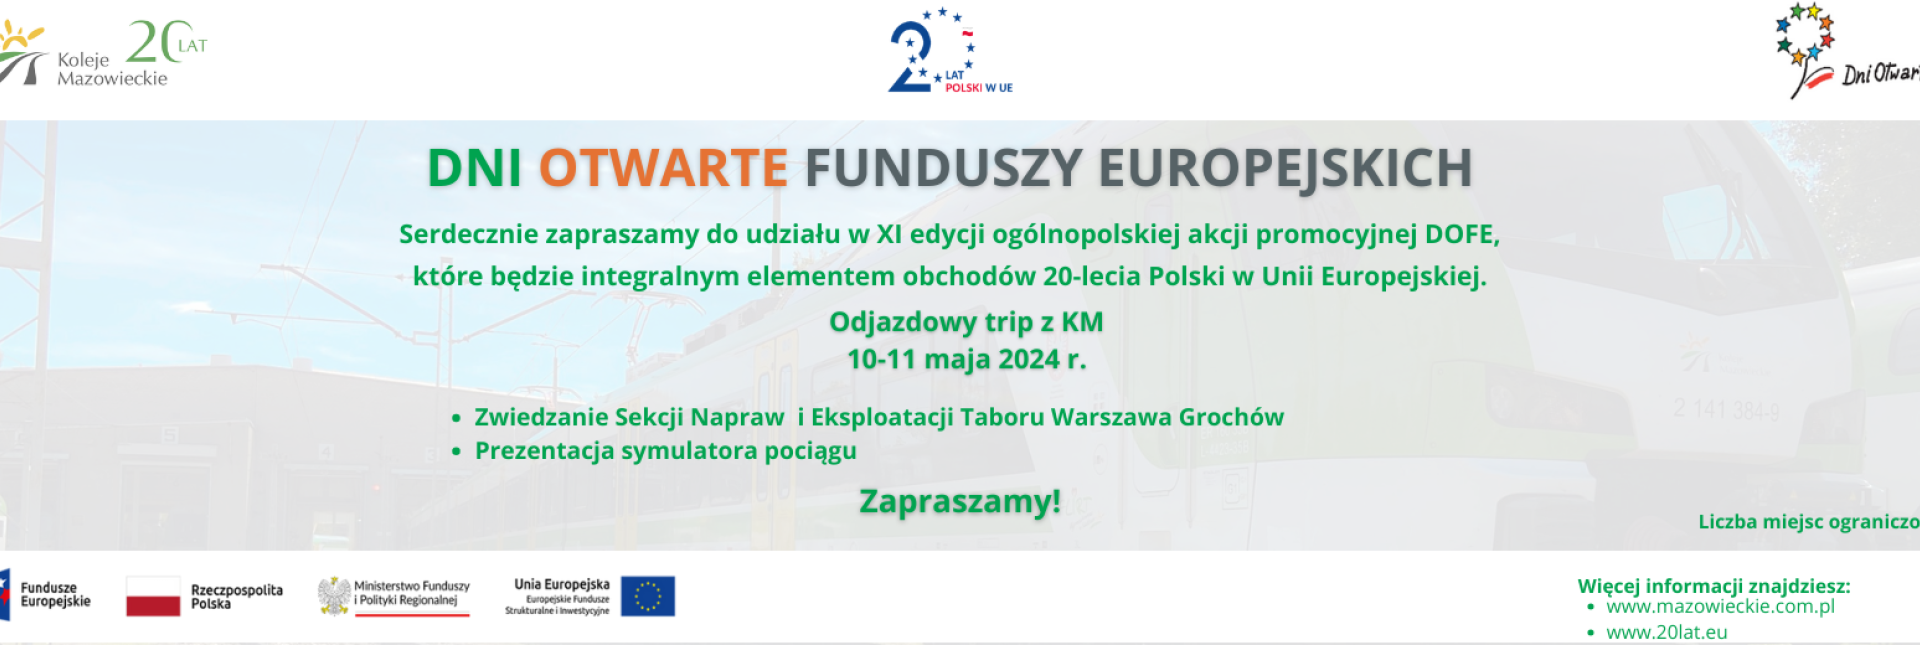 Serdecznie zapraszamy do udziału w XI edycji ogólnopolskiej akcji promocyjnej DOFE, które będzie integralnym elementem obchodów 20-lecia Polski w Unii Europejskiej.